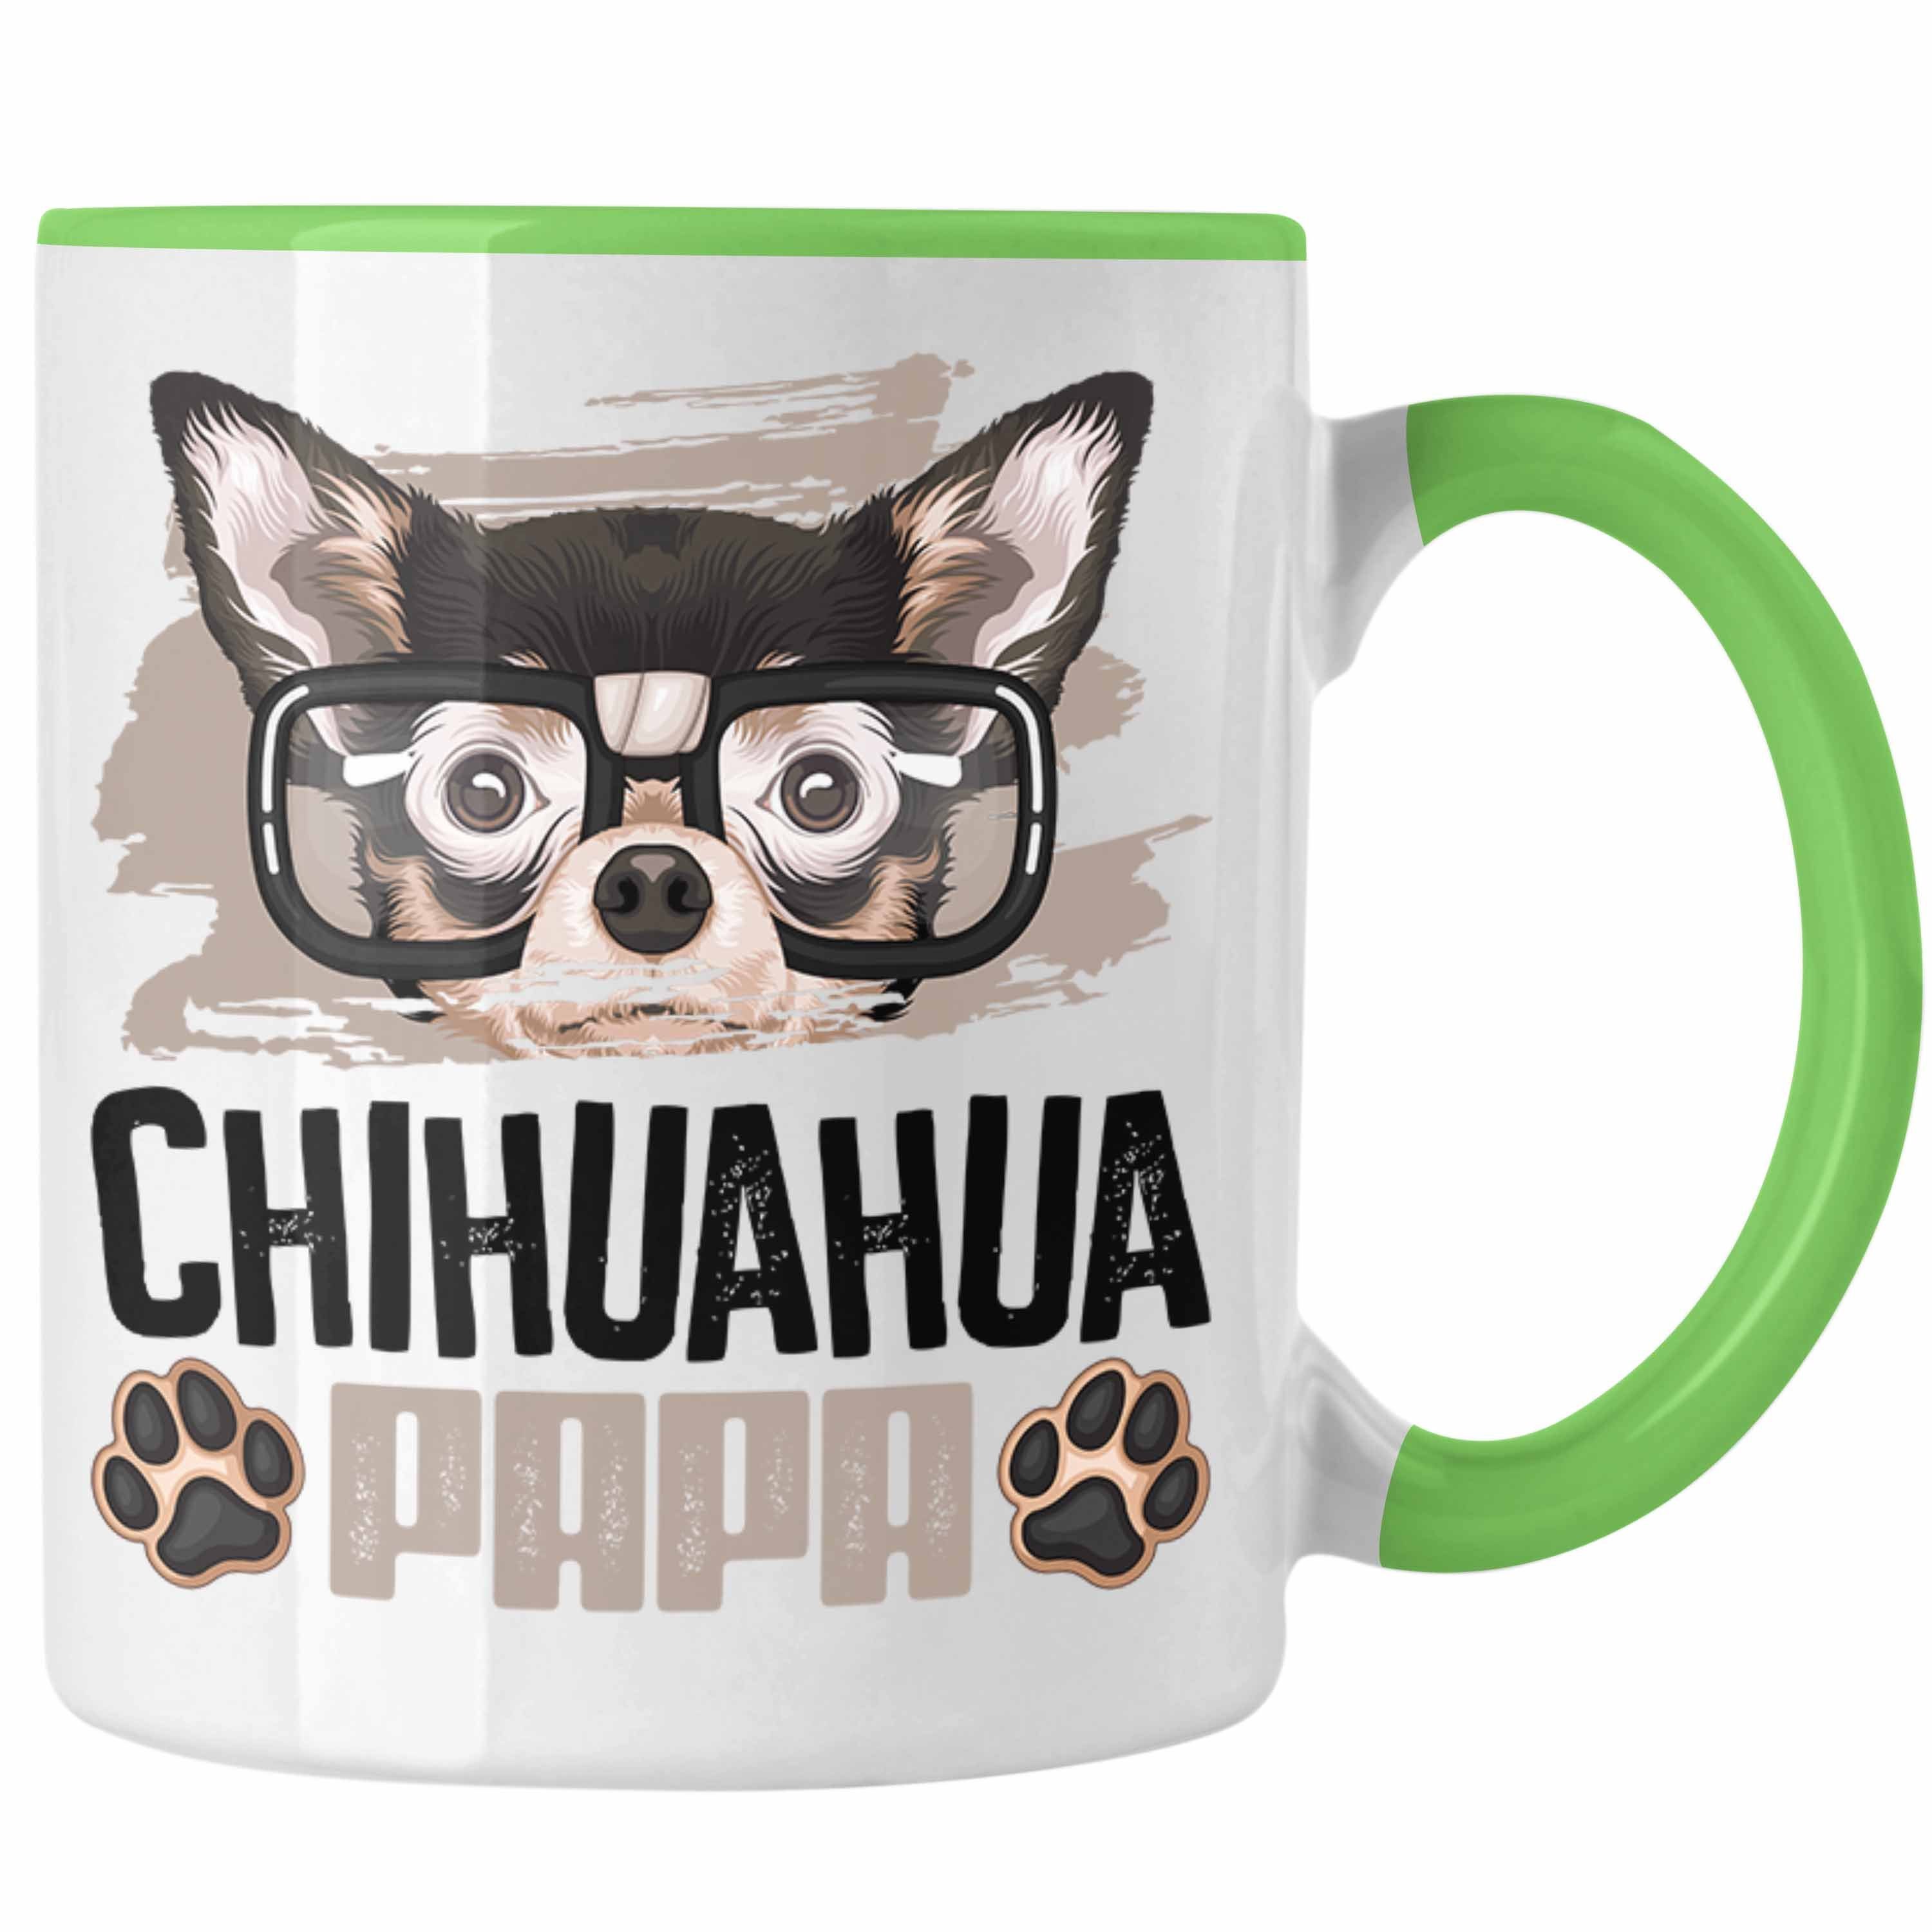 Grün Trendation Geschenkidee Lustiger Tasse Papa Besitzer Geschenk Tasse Spruch Chihuahua Ch